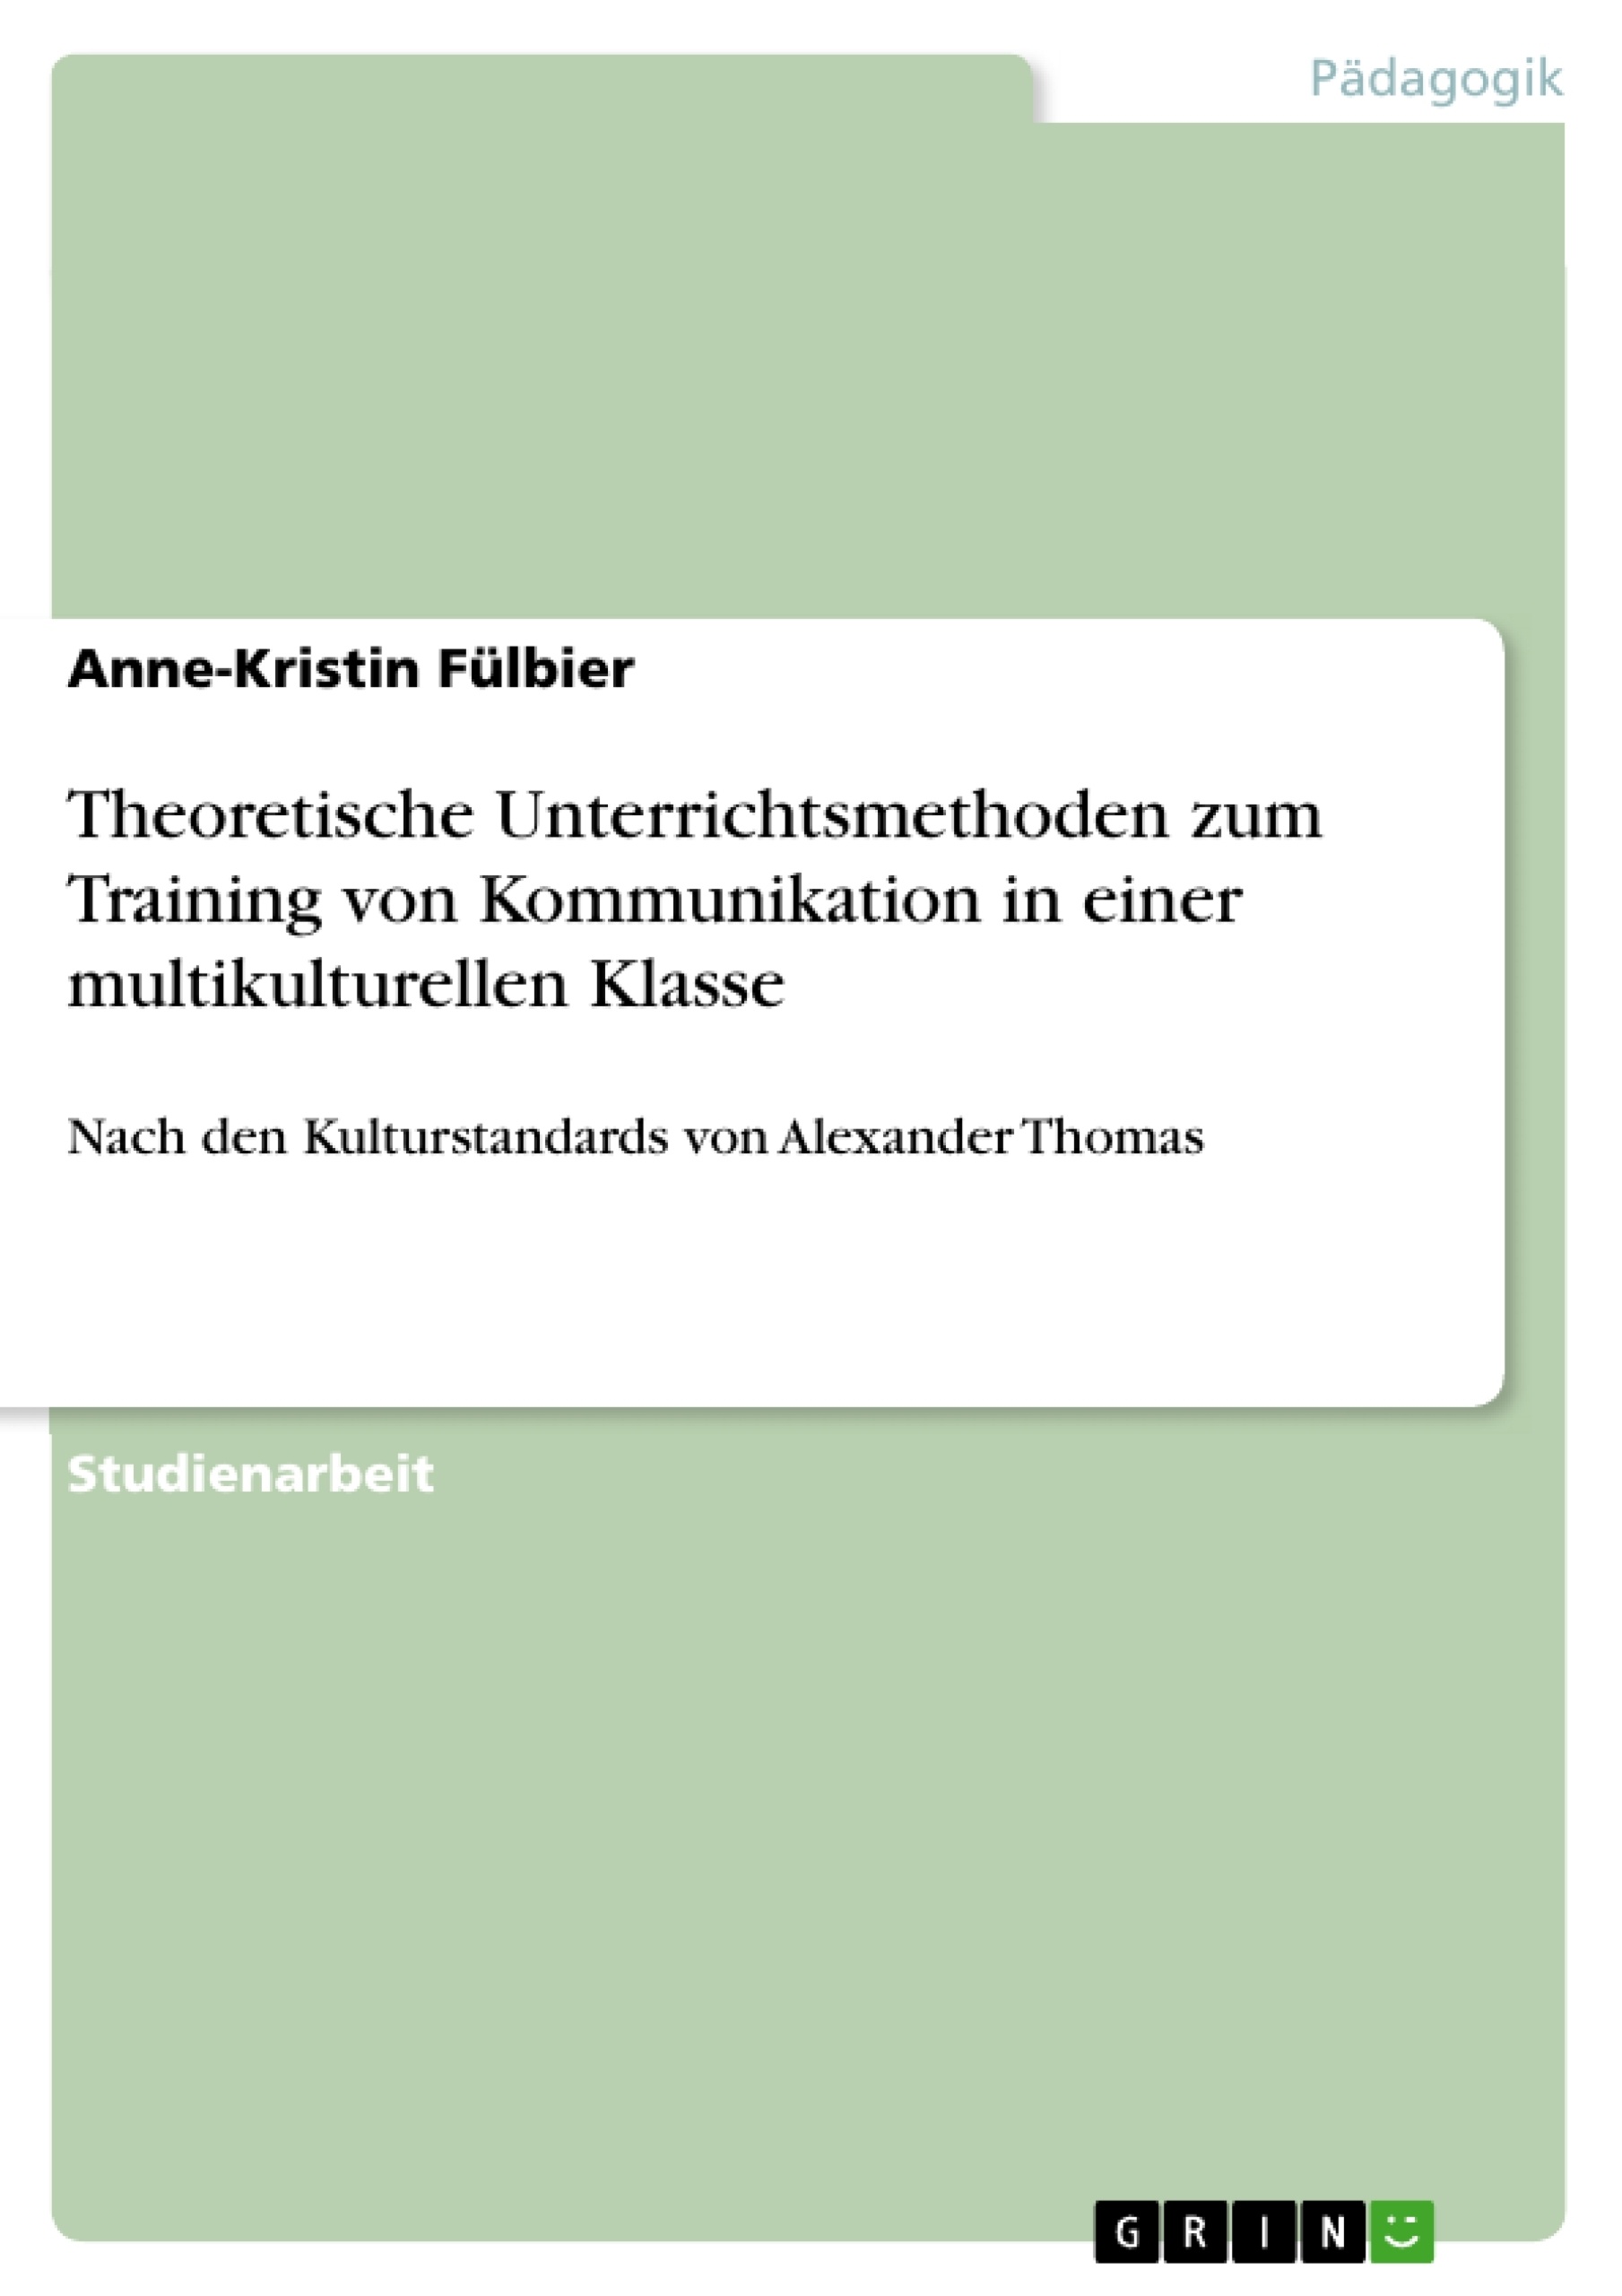 Title: Theoretische Unterrichtsmethoden zum Training von Kommunikation in einer multikulturellen Klasse